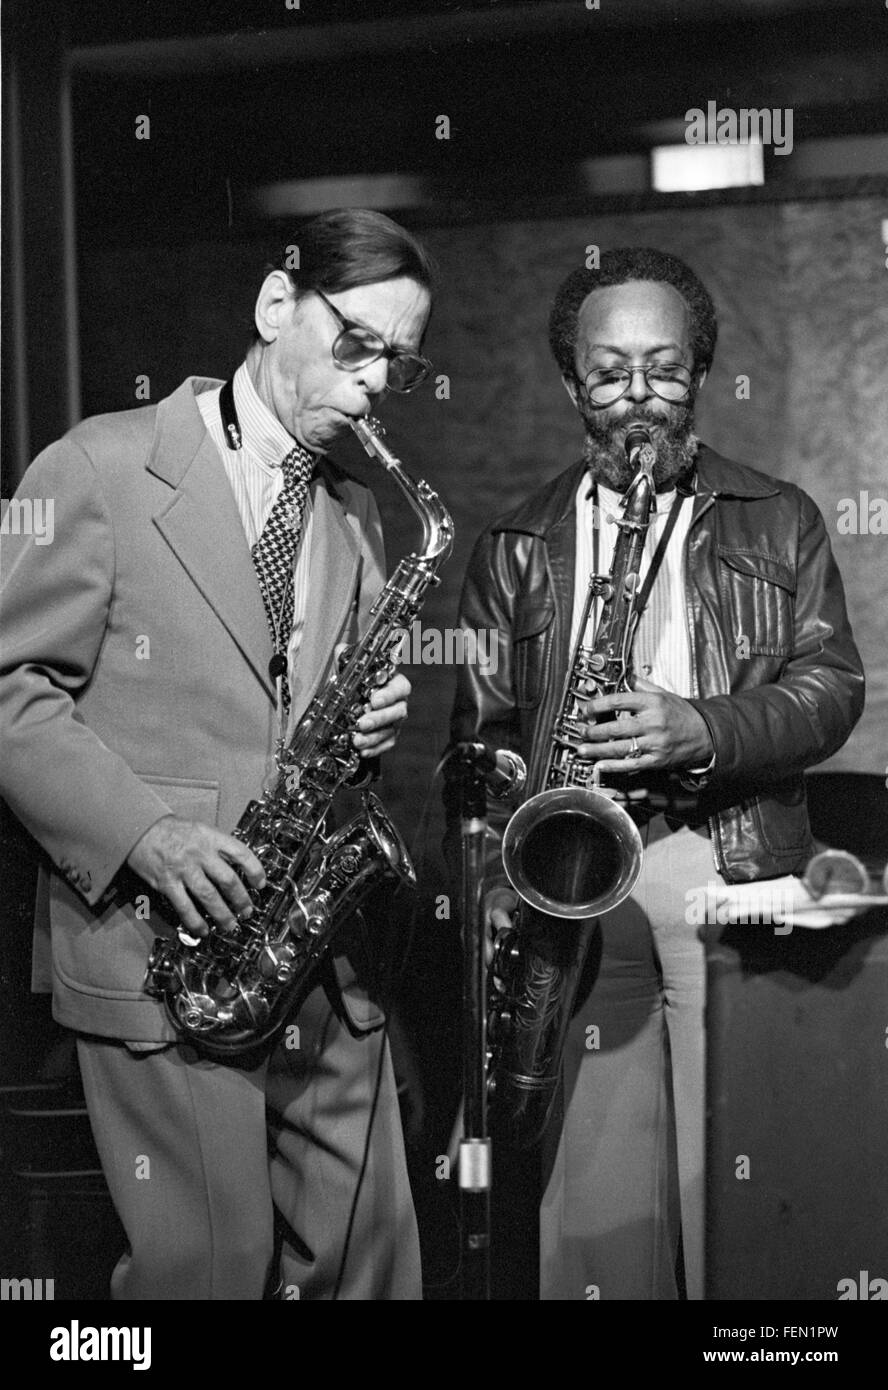 Les Lieber e Jimmy Heath, a Lieber "Jazz a mezzogiorno" su 58th Street in Manhattan. La data è più probabilmente il 11 gennaio 1980, a una jam session con Doc Cheatham (non mostrato qui). Foto Stock